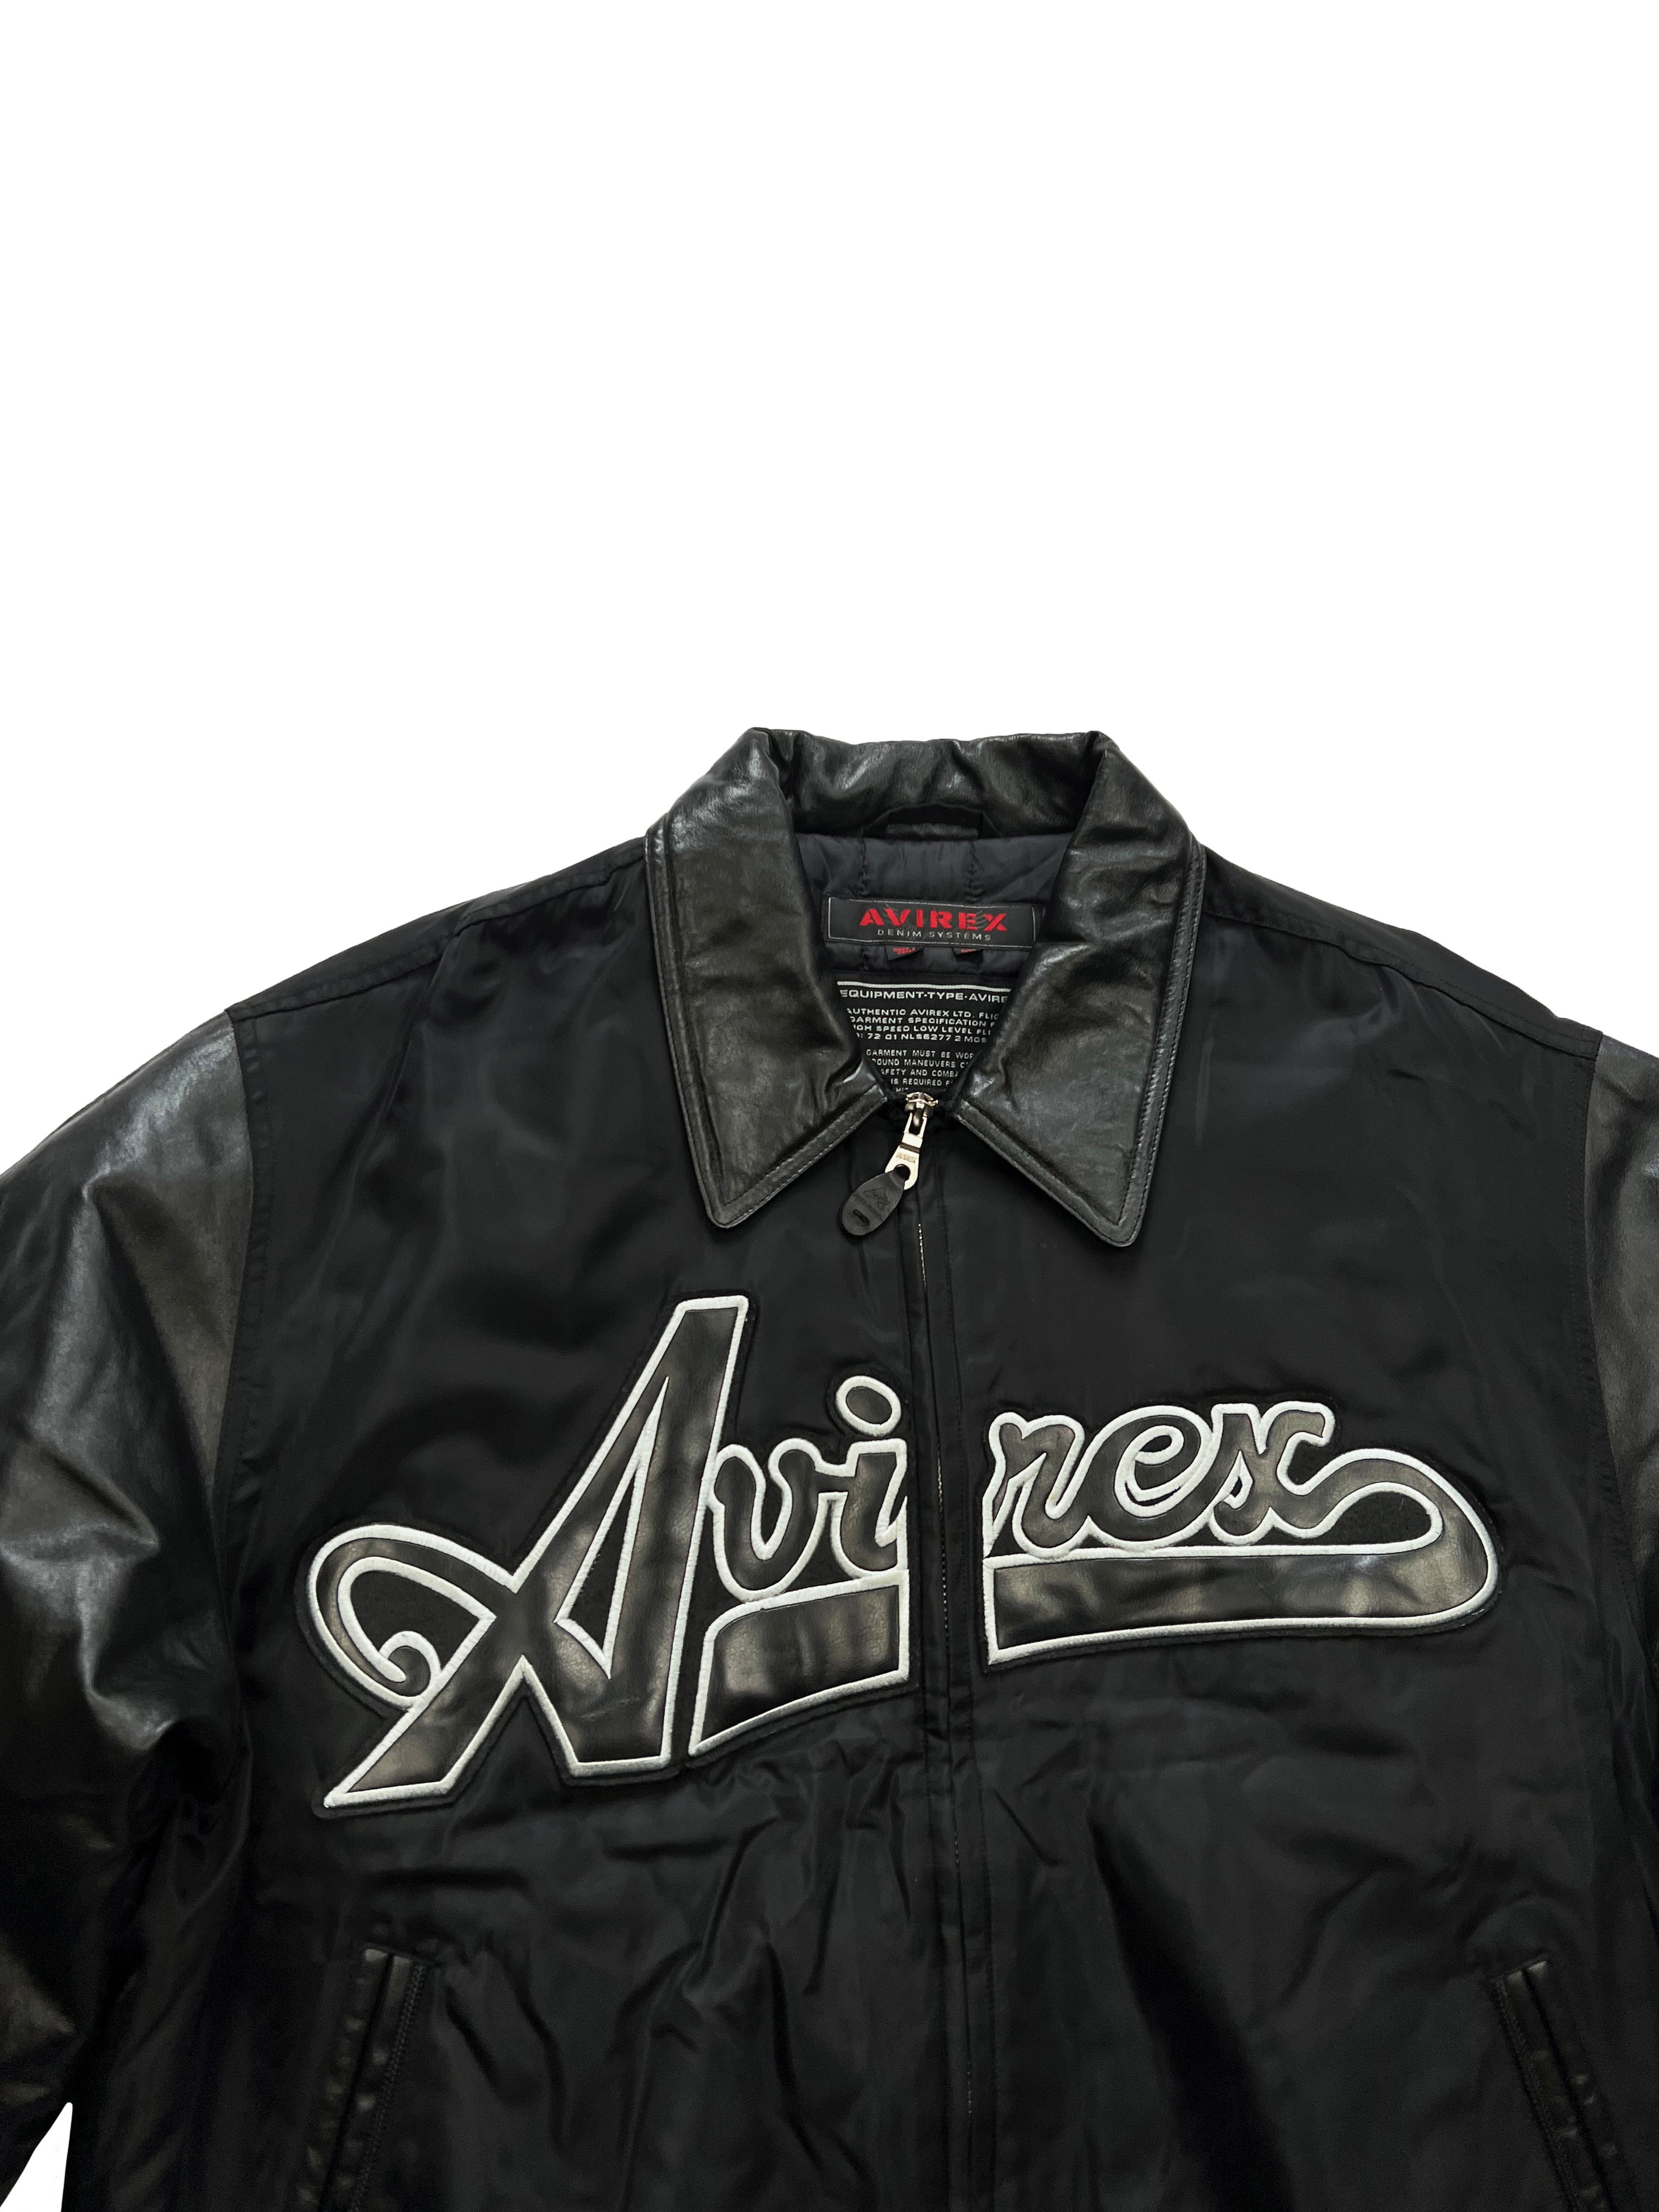 Avirex Black Leather/Nylon Jacket 2001